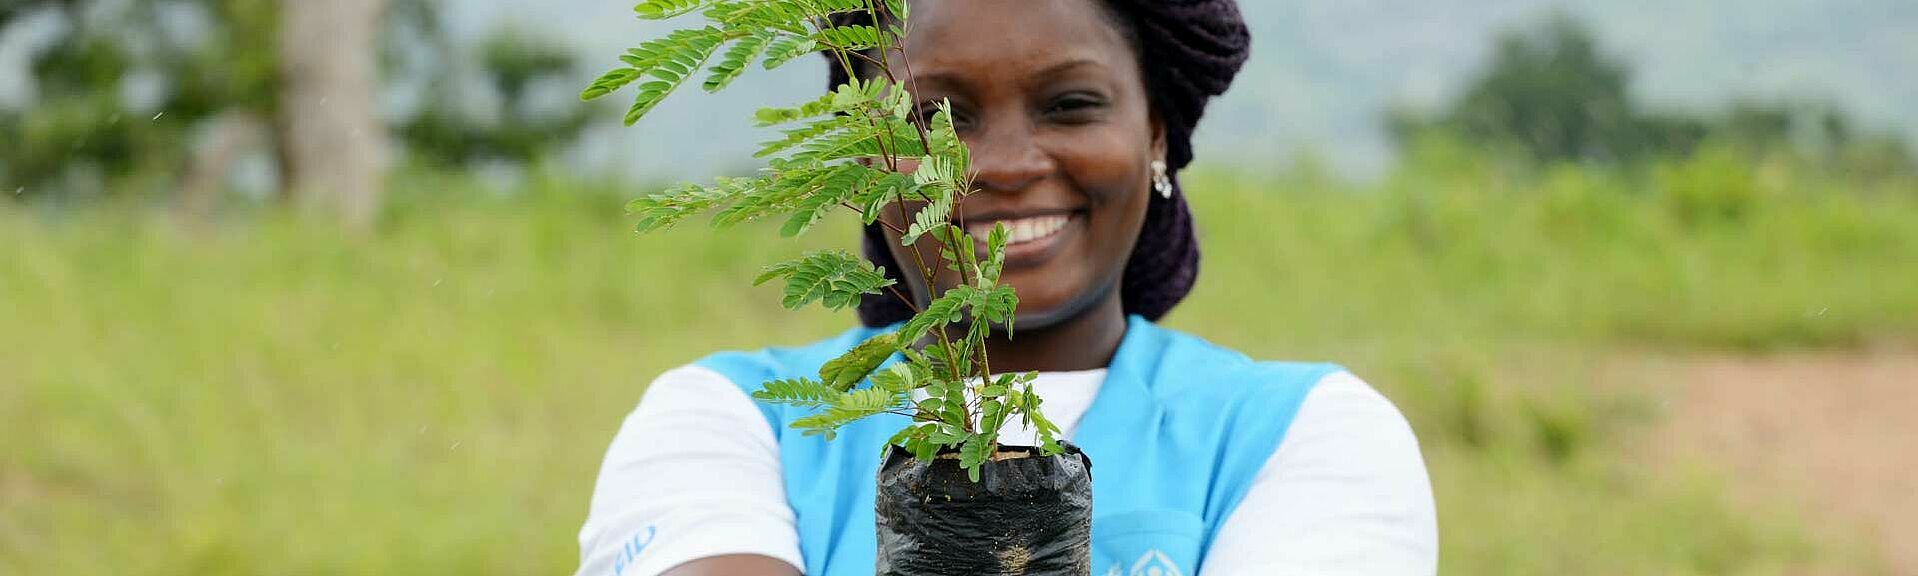 UNHCR-Mitarbeiterin mit Pflanze in der Hand